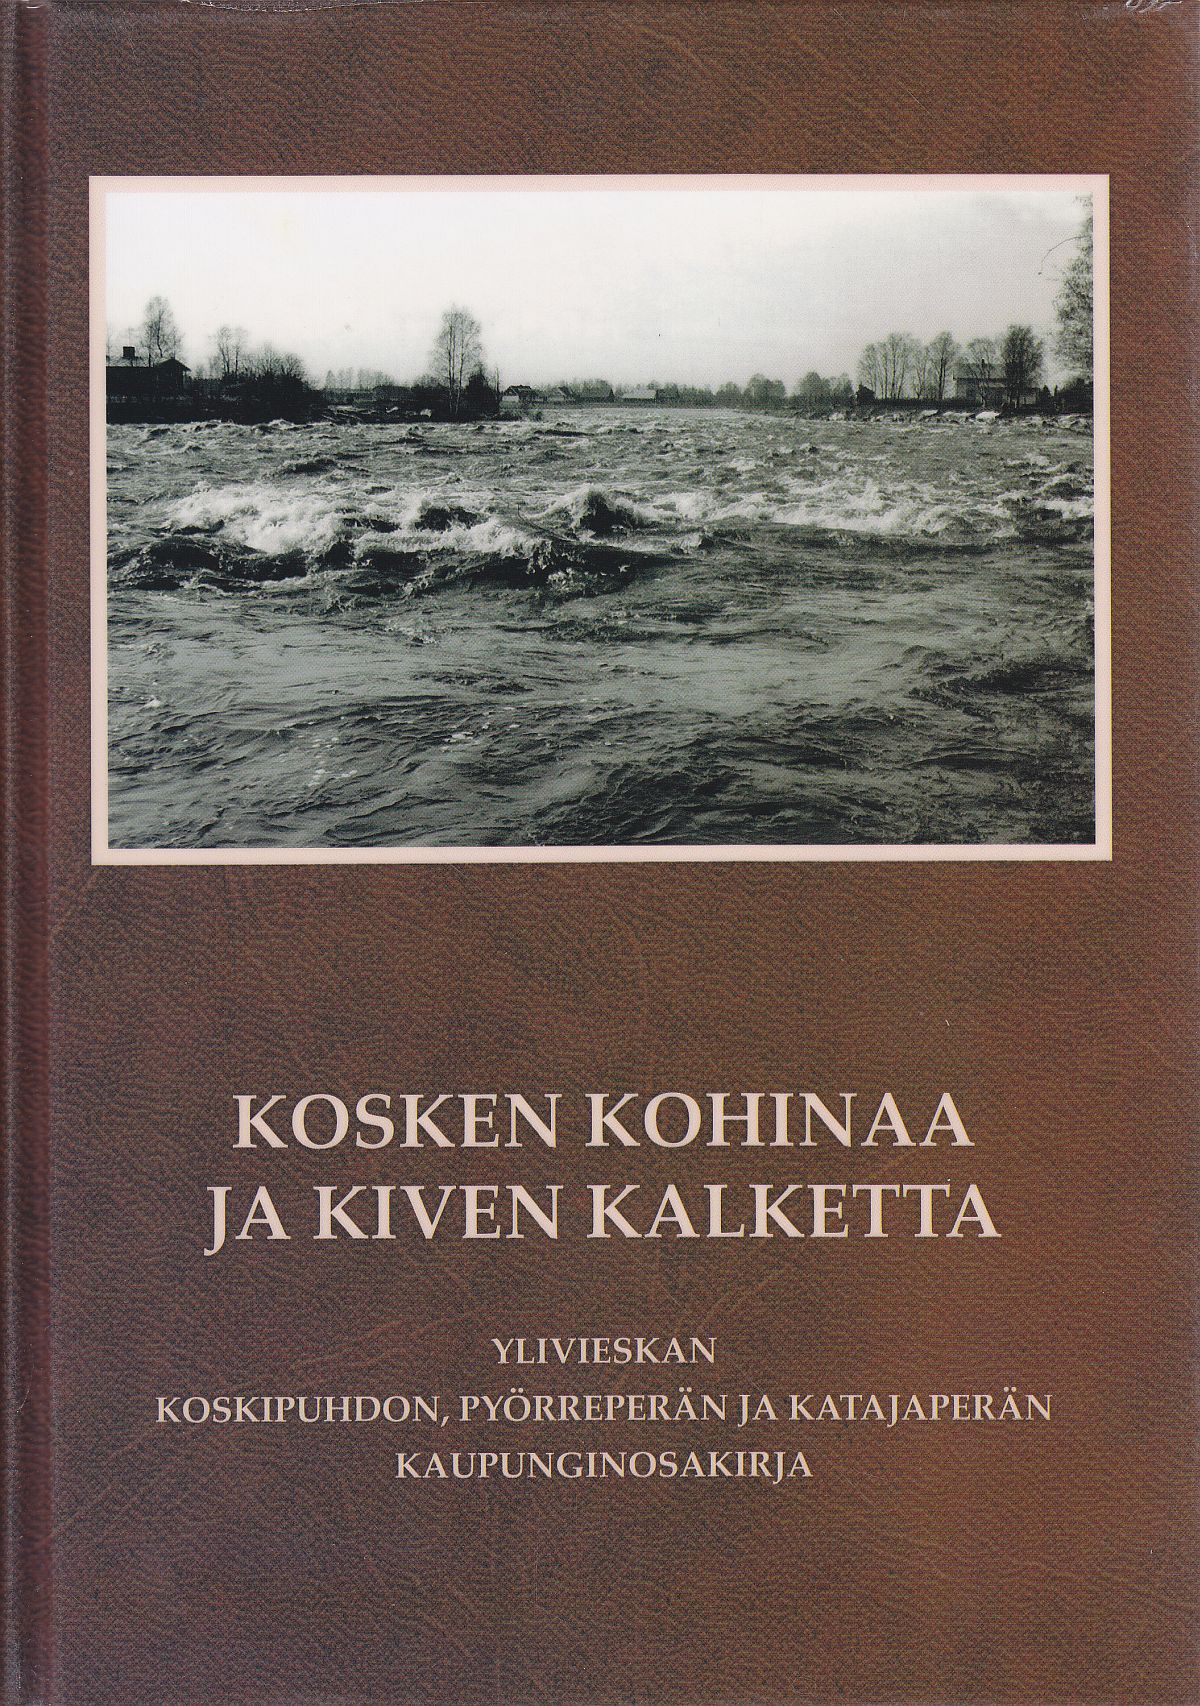 Kosken kohinaa ja kiven kalketta -teoksen kannessa on kuva Hannunkoskesta (Hamarinkoski) kevättulvan aikaan 1983.